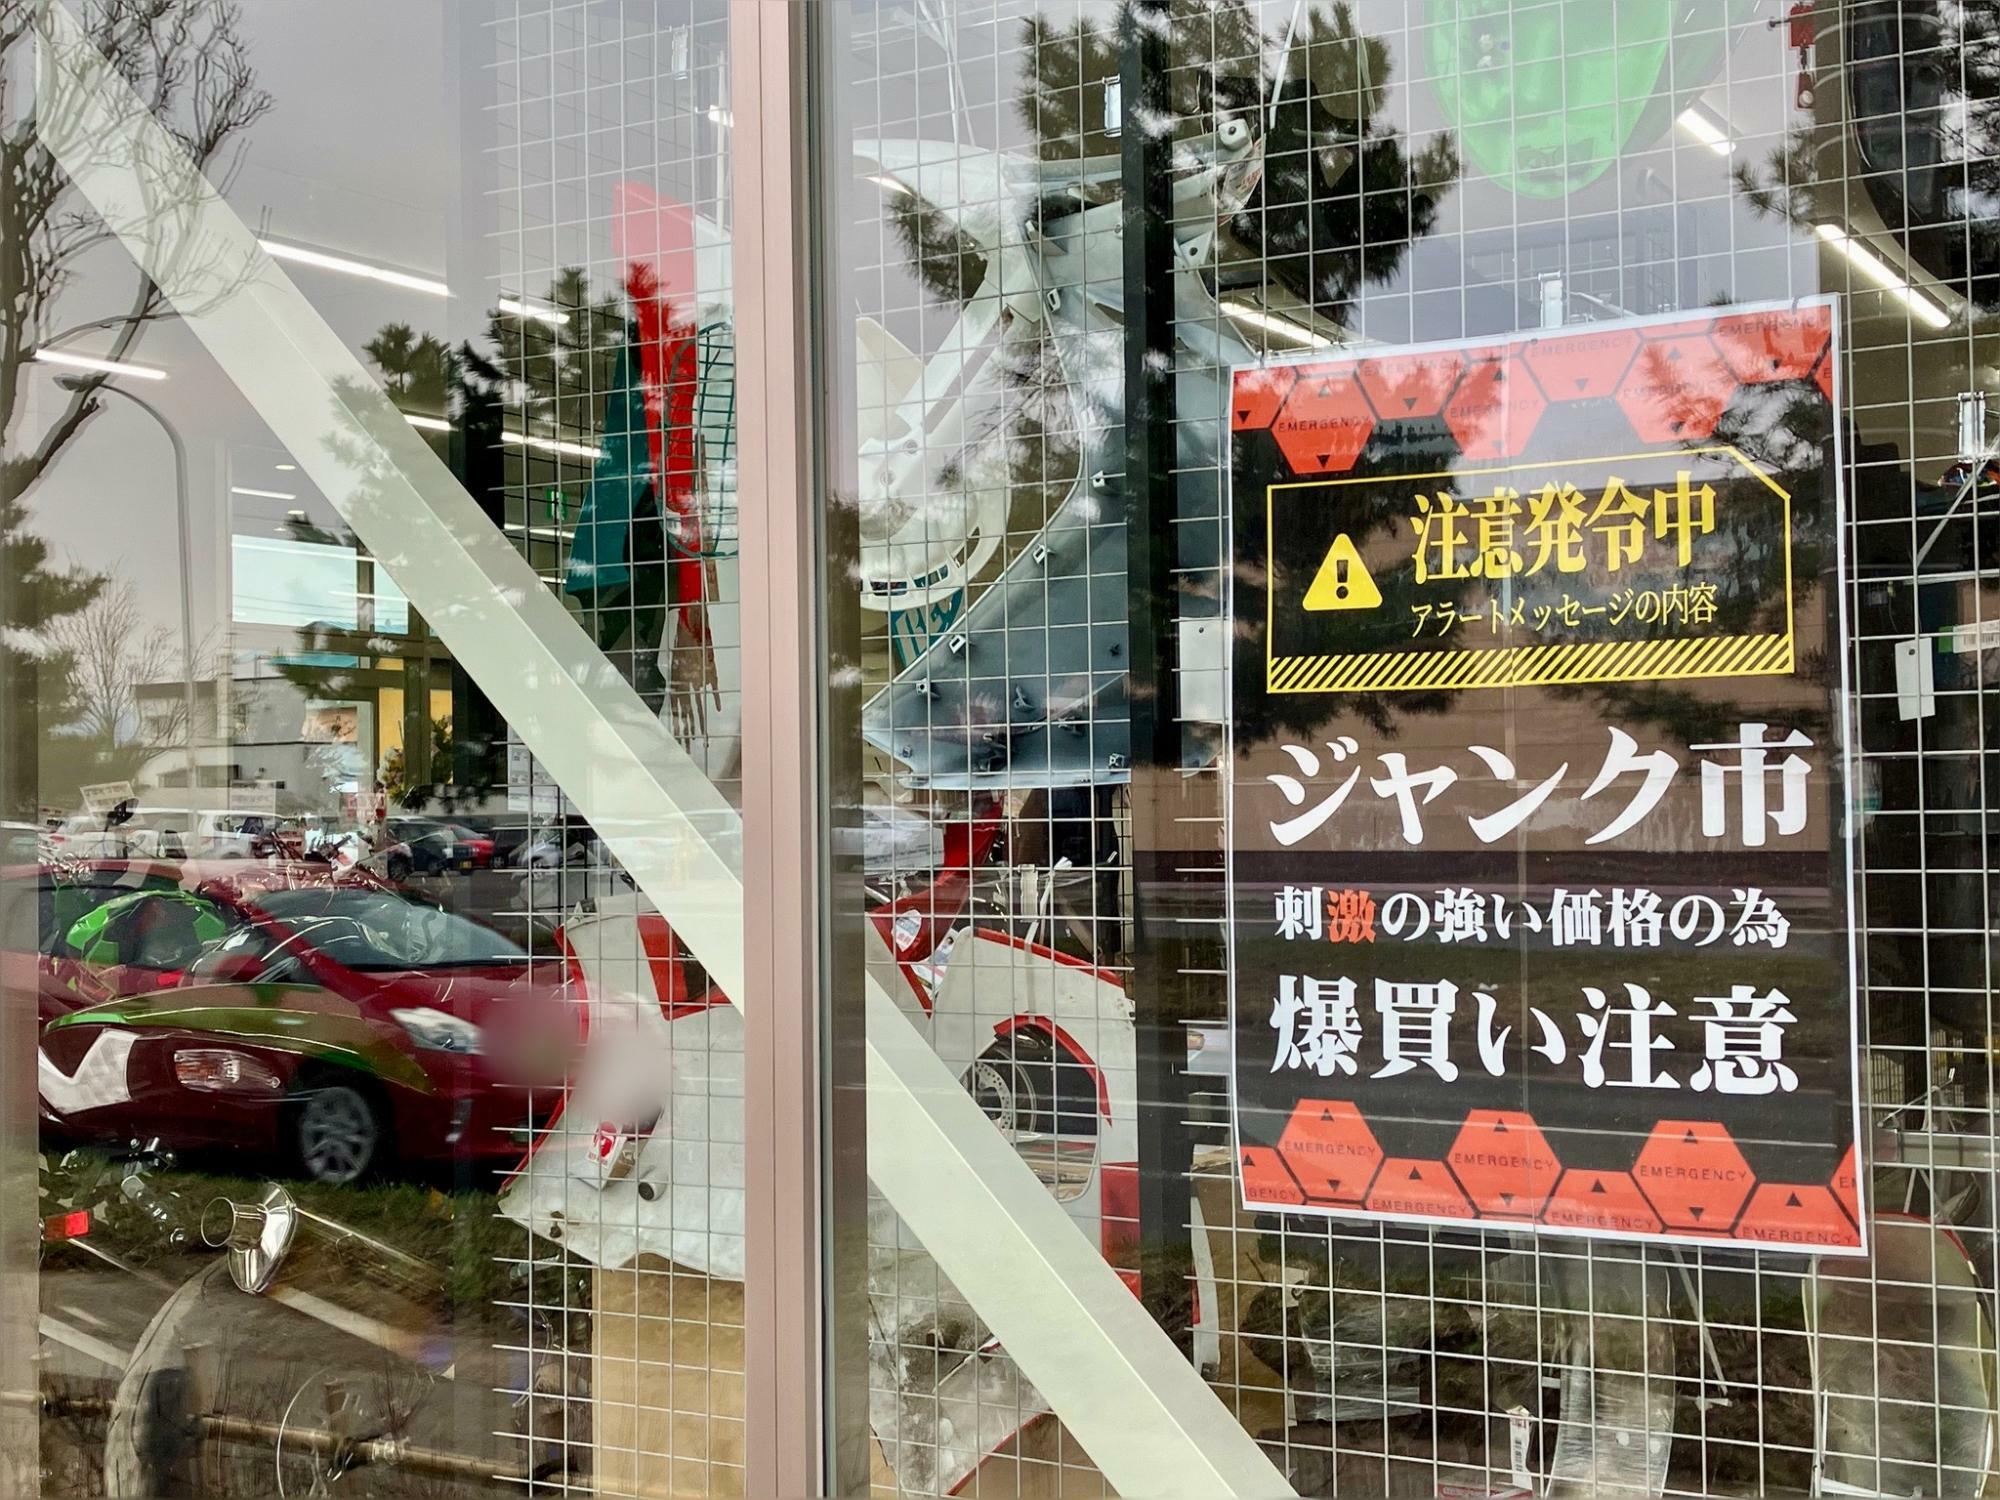 「BIKE王 札幌店」・「アップガレージライダース 札幌店」